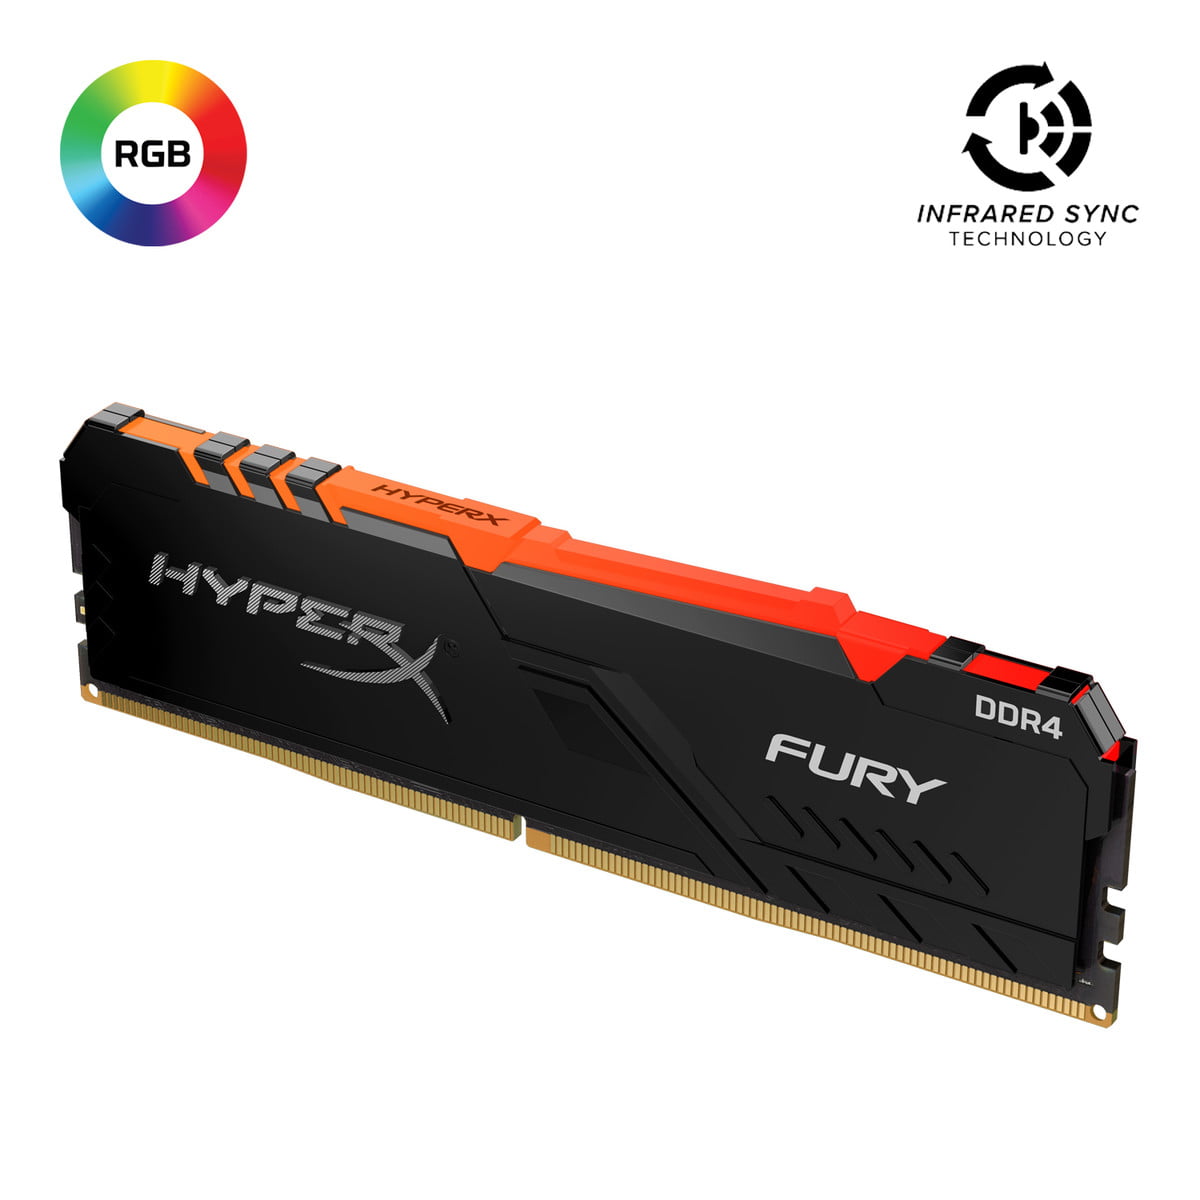 HyperX Fury RGB 32GB 2666MHz DDR4 CL16 DIMM Single Stick HX426C16FB3A/32